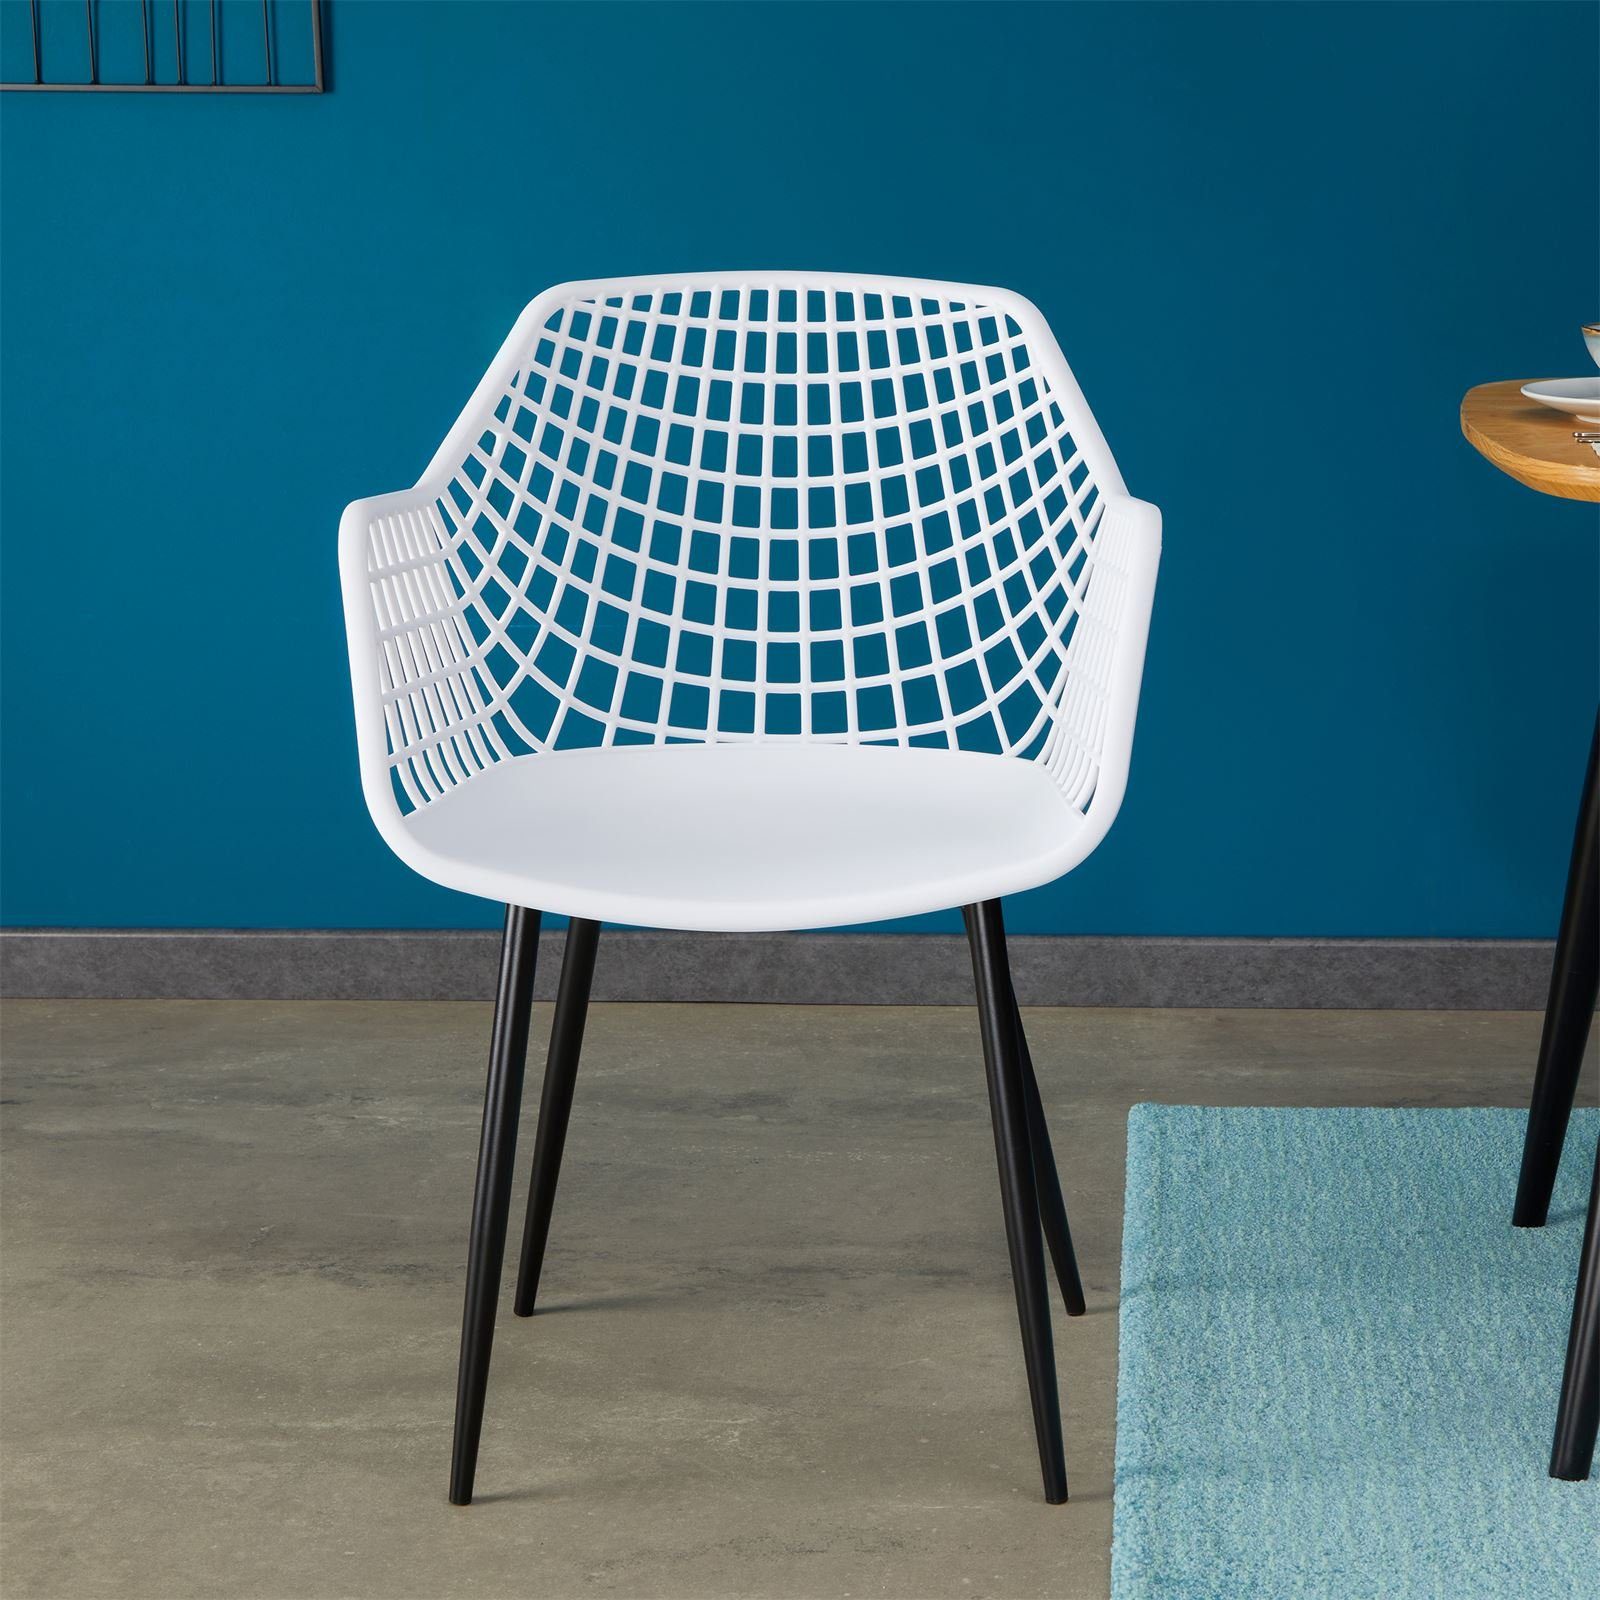 Küchenstuhl (4 Kunsts Retro 4er St), Design Stühle weiß LUCIA IDIMEX Esszimmerstuhl mit Set Esszimmerstuhl Sitz